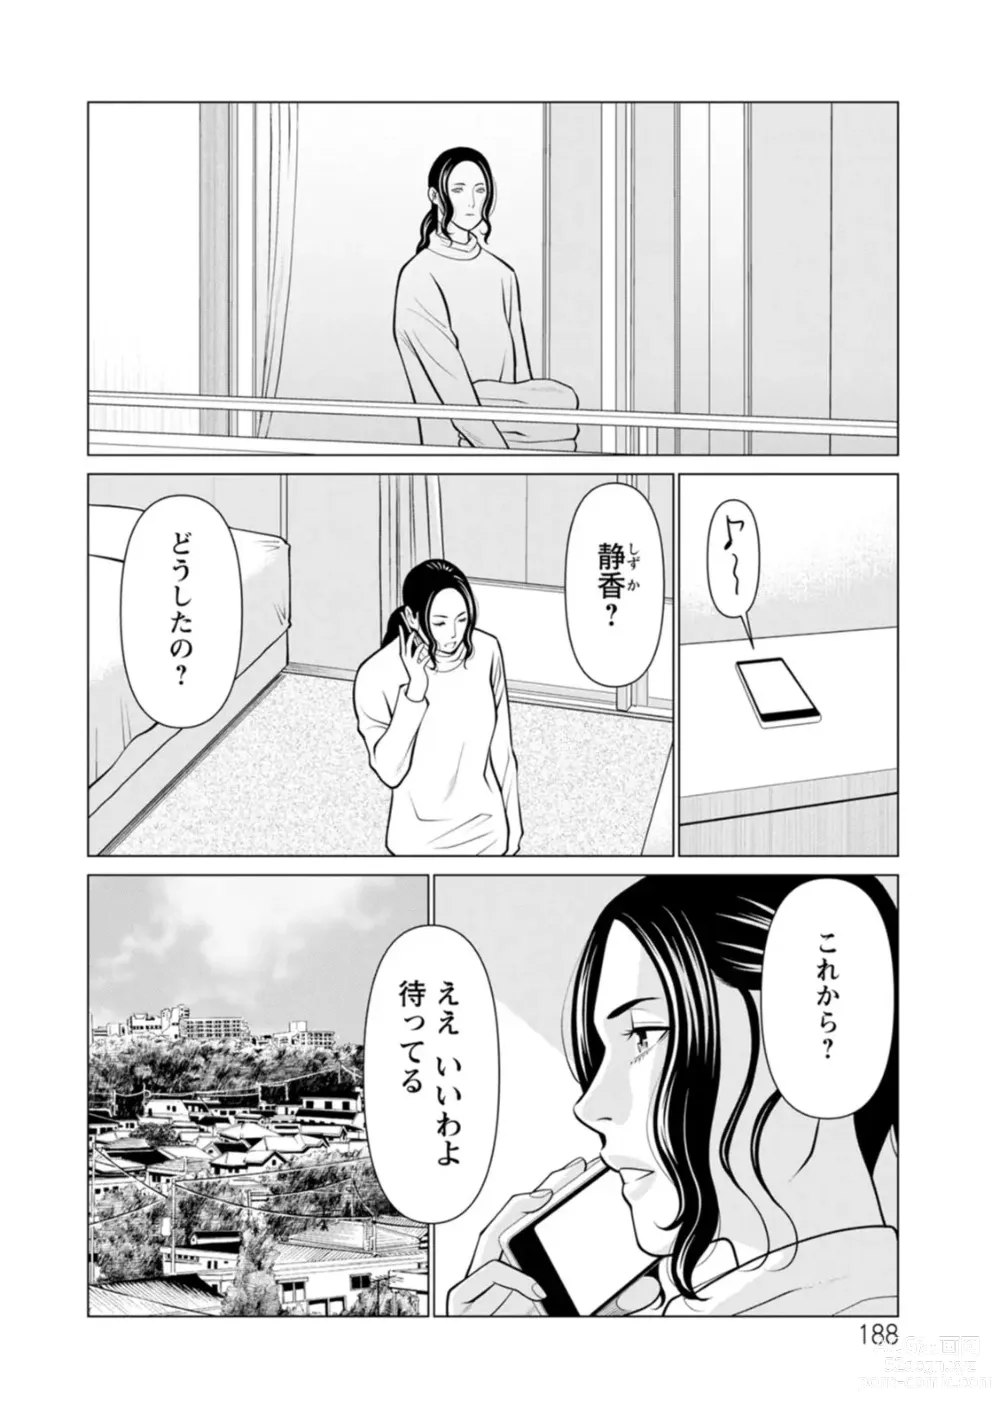 Page 188 of manga Rengoku no Sono - The Garden of Purgatory 2